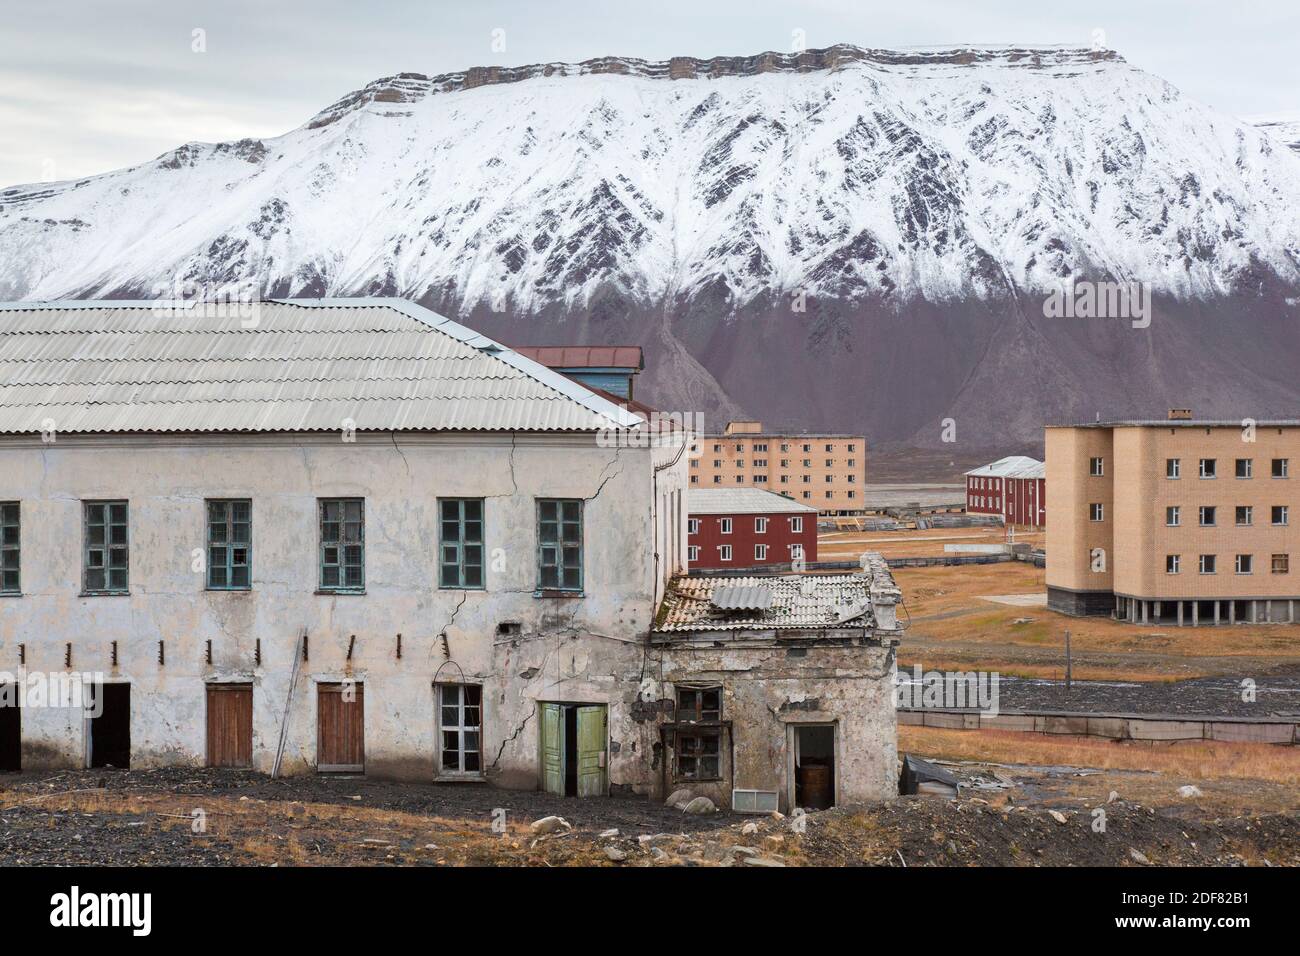 Edifici minerari derelict a Pyramiden, abbandonato insediamento sovietico di miniere di carbone su Svalbard / Spitsbergen Foto Stock